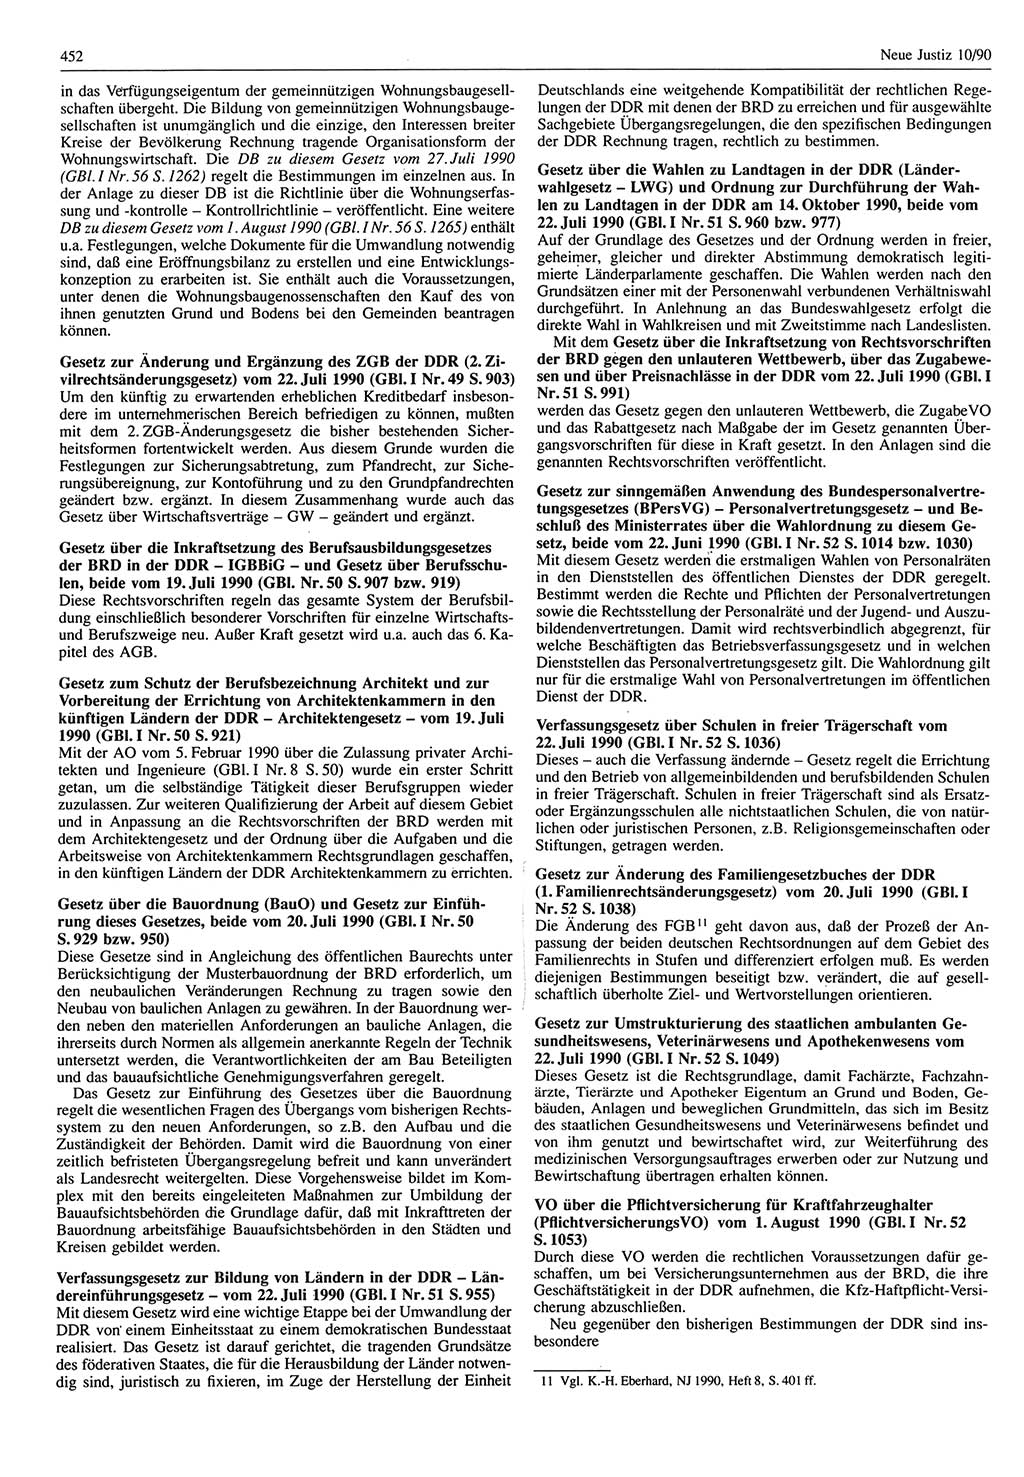 Neue Justiz (NJ), Zeitschrift für Rechtsetzung und Rechtsanwendung [Deutsche Demokratische Republik (DDR)], 44. Jahrgang 1990, Seite 452 (NJ DDR 1990, S. 452)